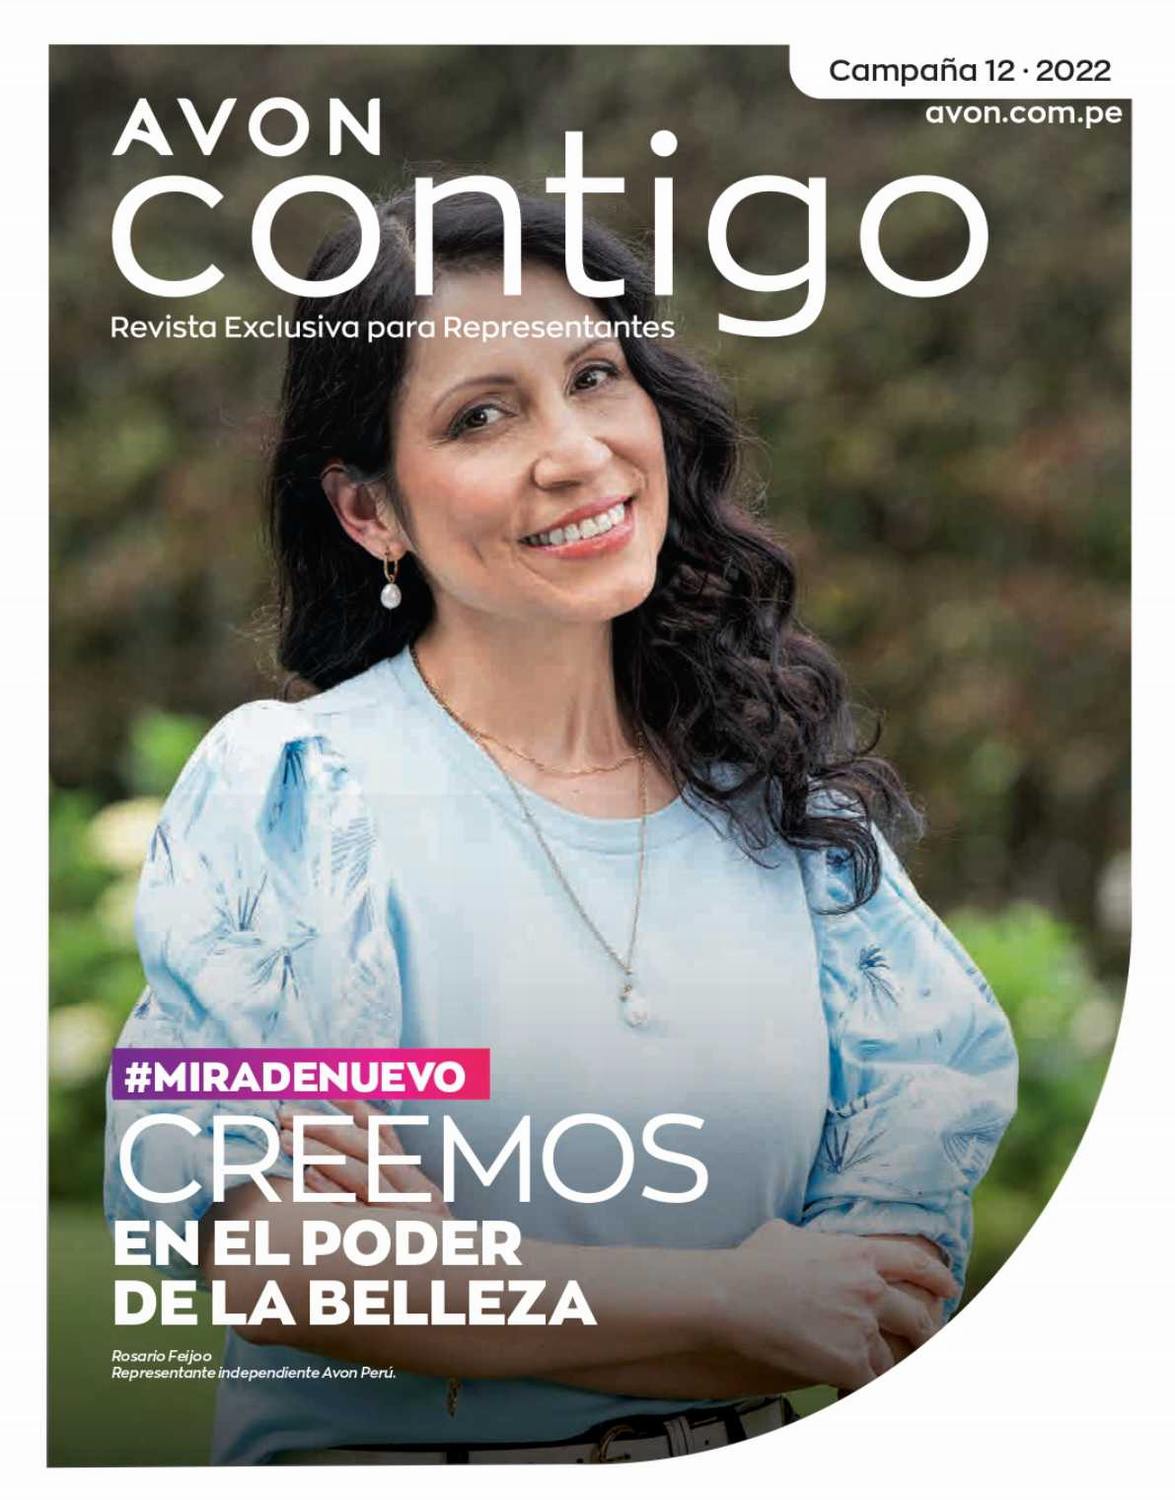 Avon Contigo Campaña 12 2022 Perú